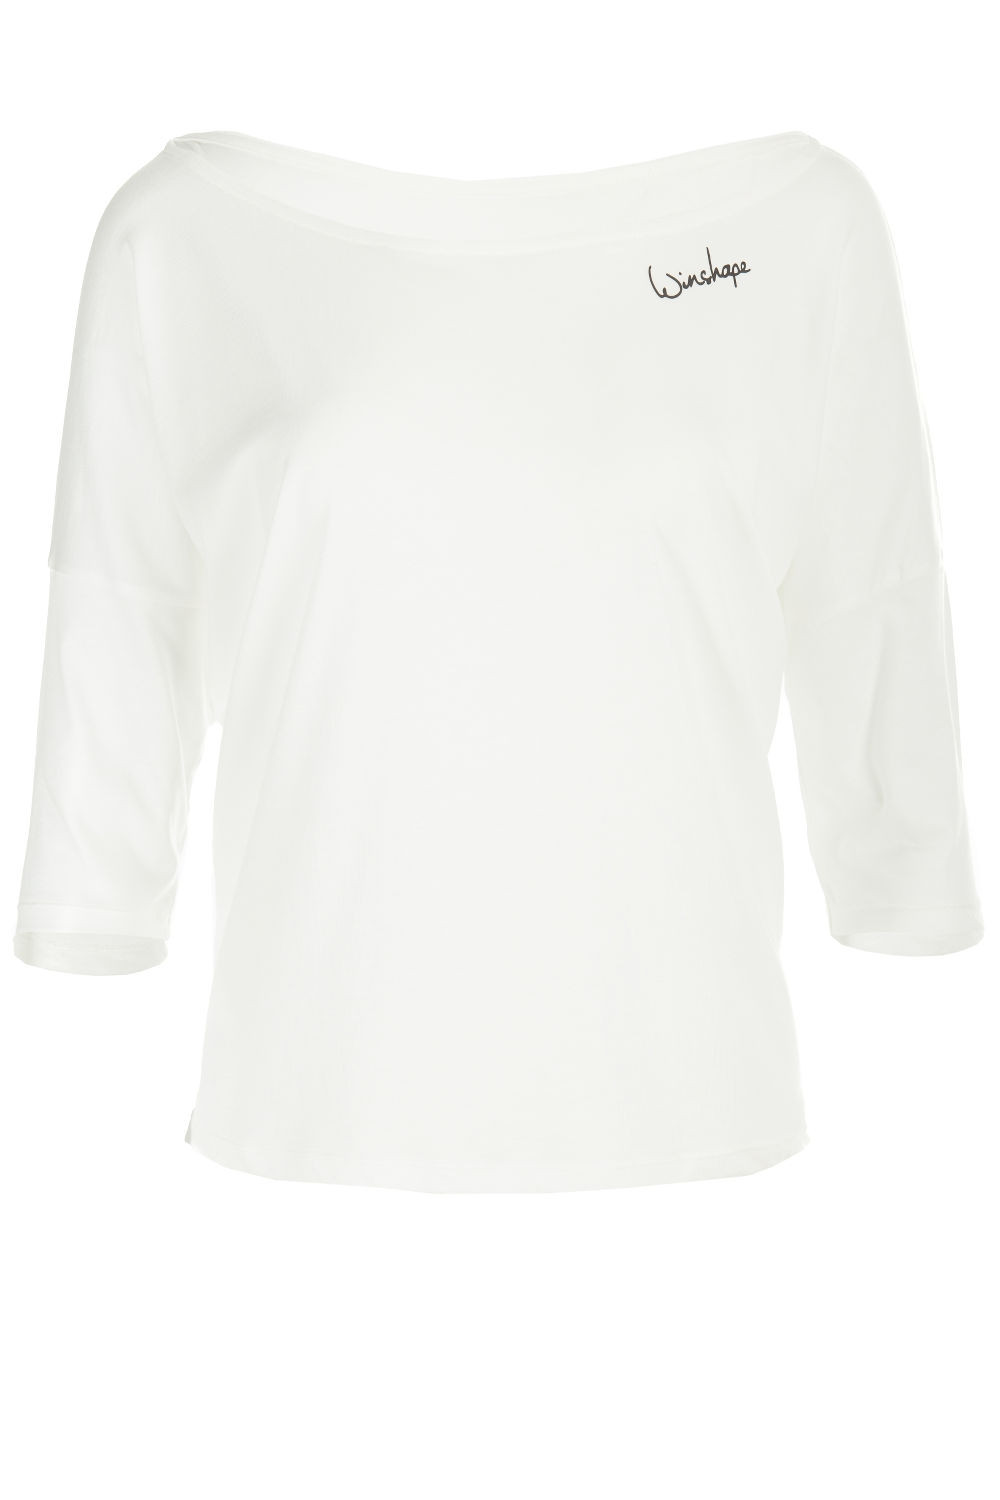 Style weiß, Dance leichtes Ultra Modal-3/4-Arm MCS001, Shirt vanilla Winshape